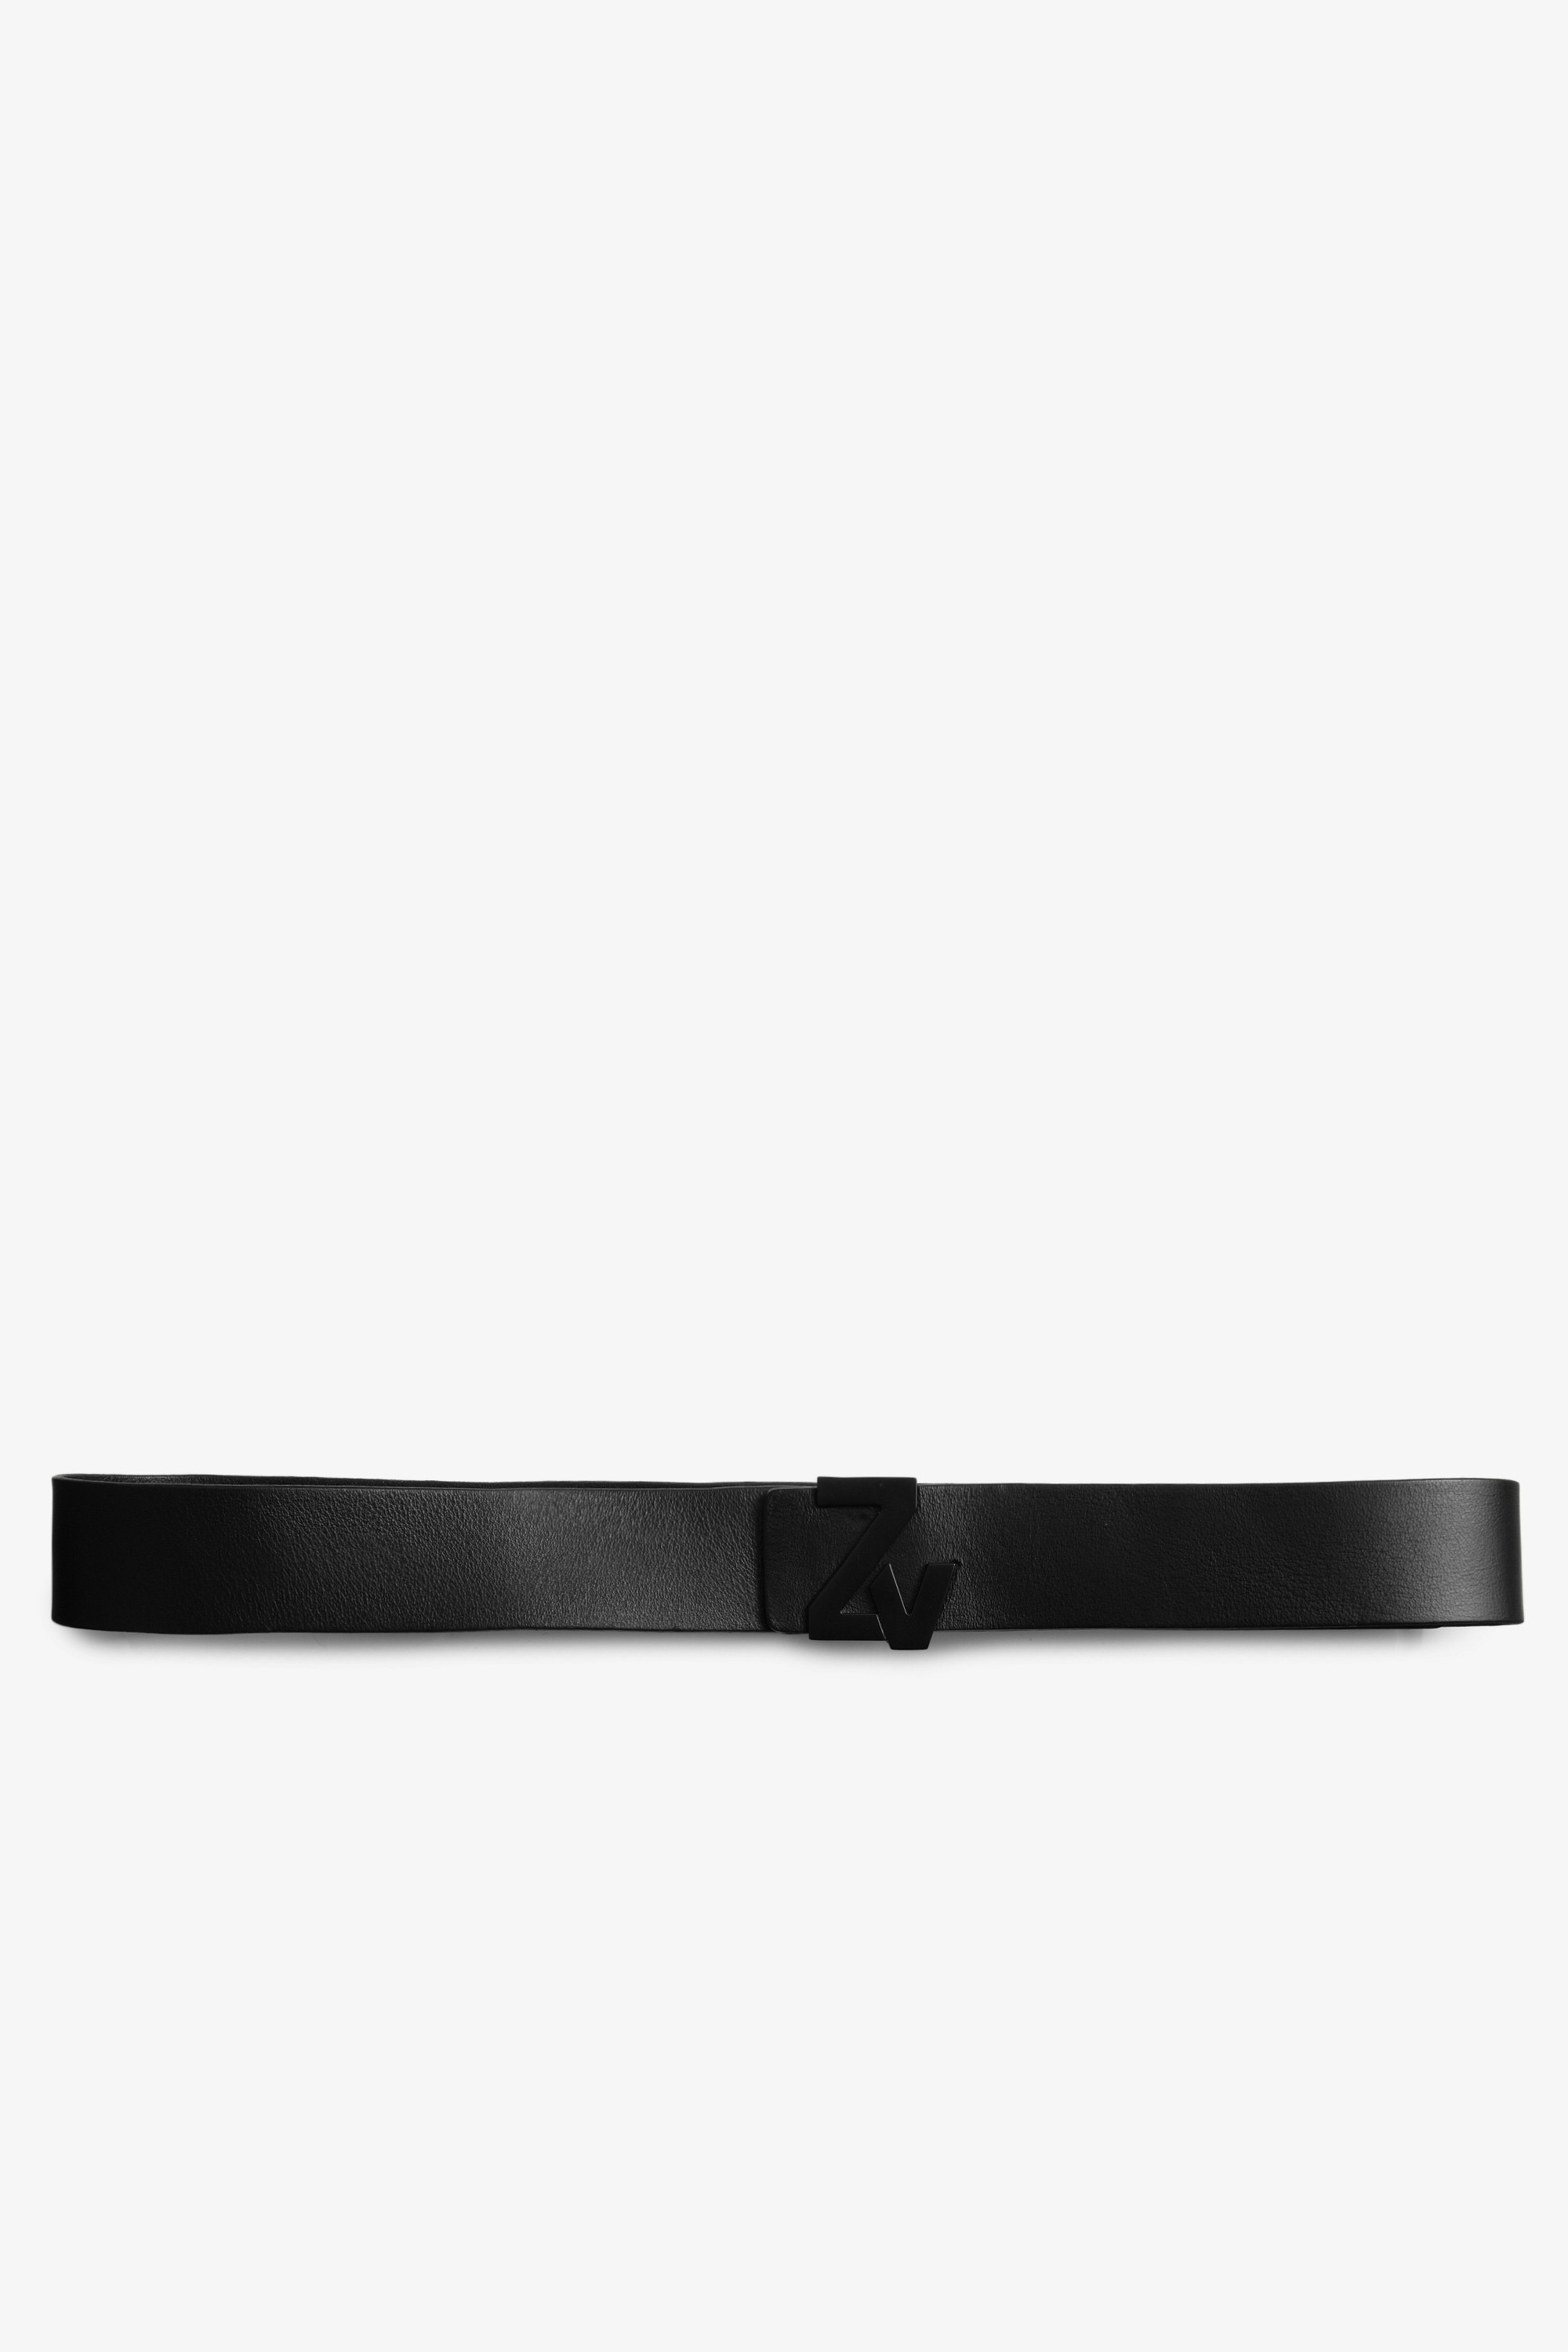 Cinturón ZV Initiale La Belt Cuero - Cinturón de hombre de piel negra y hebilla ZV